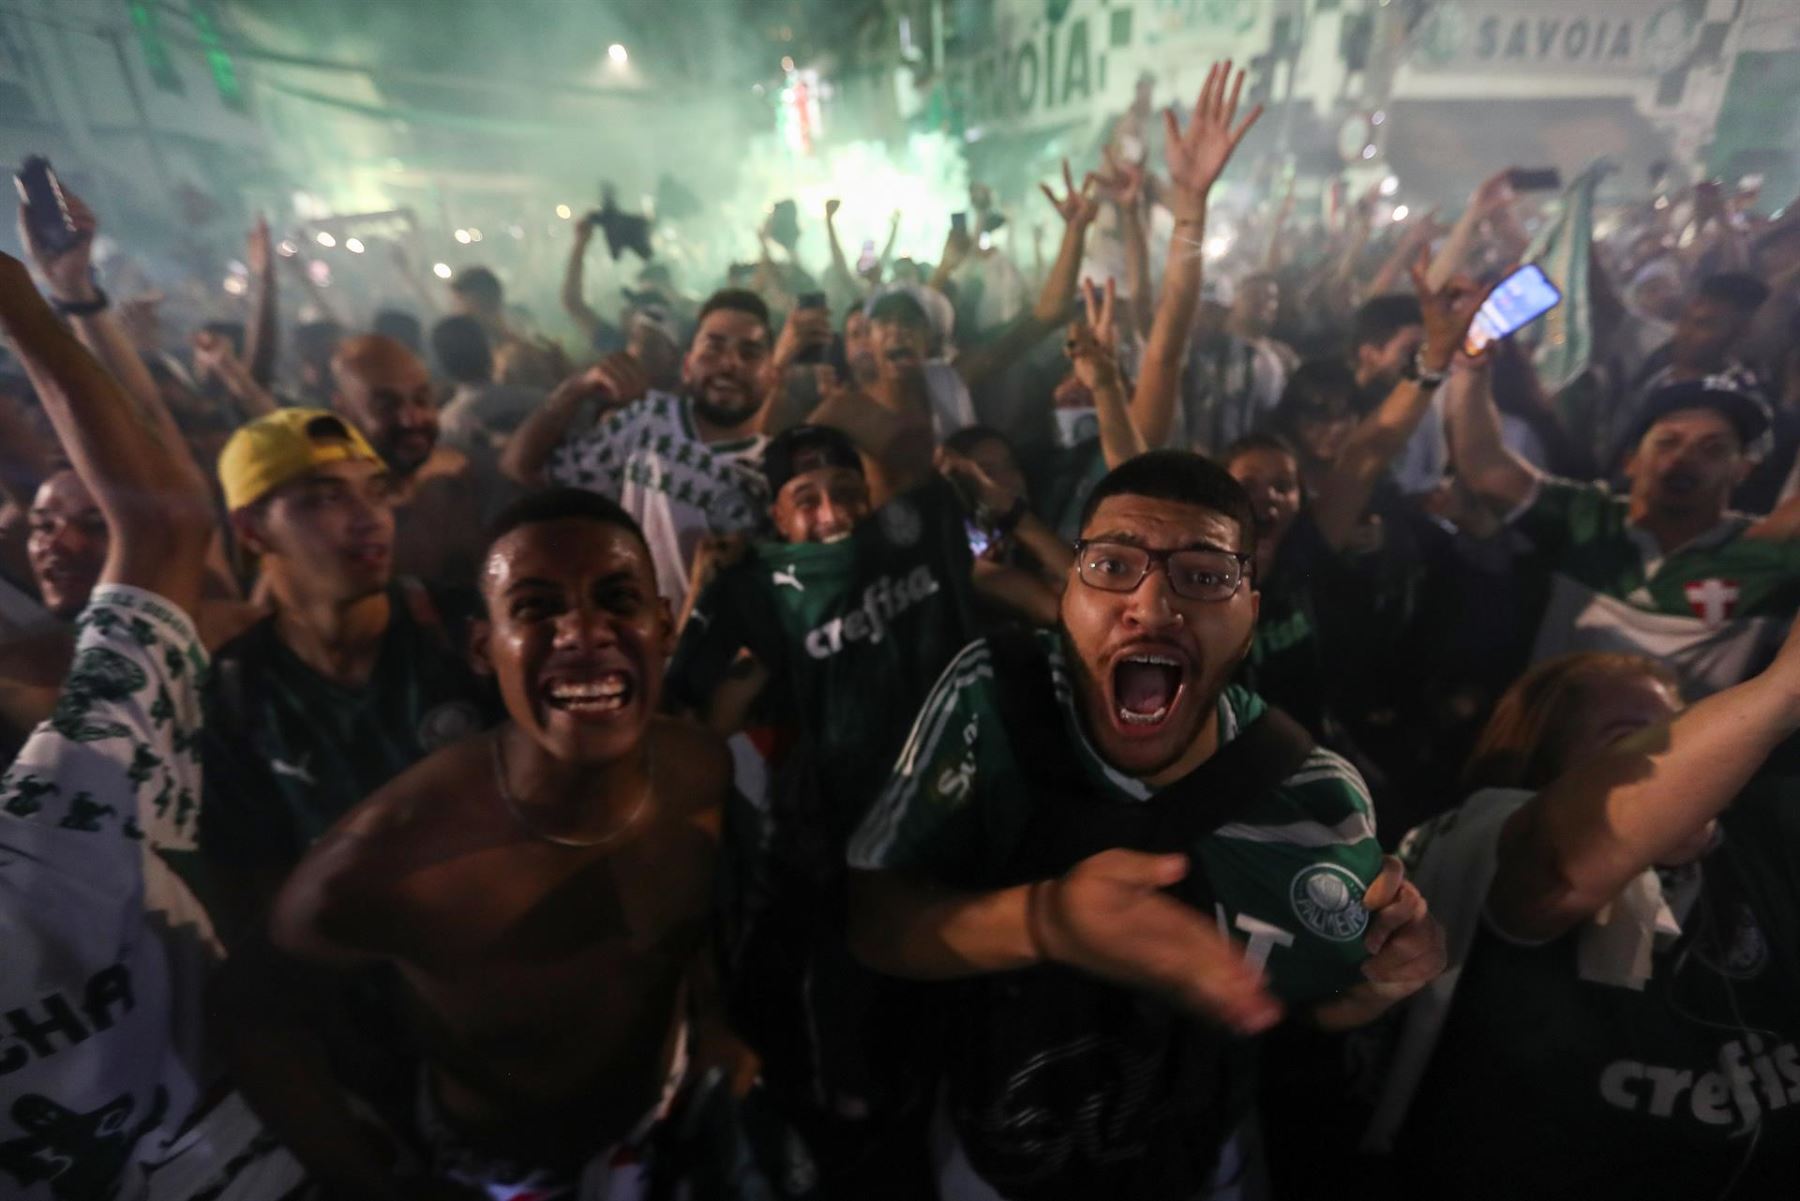 Aficionados de Palmeiras celebran el triunfo de su equipo tras ganar hoy la Copa Libertadores, durante una concentración de hinchas cerca del estadio Allianz Parque, en Sao Paulo (Brasil). Palmeiras, campeón del torneo en 2020, defendió su título y derrotó este sábado 2-1 a Flamengo desde el estadio Centenario de Montevideo, en Uruguay, y se coronó campeón de la Copa Libertadores 2021. EFE/ Sebastiao Moreira